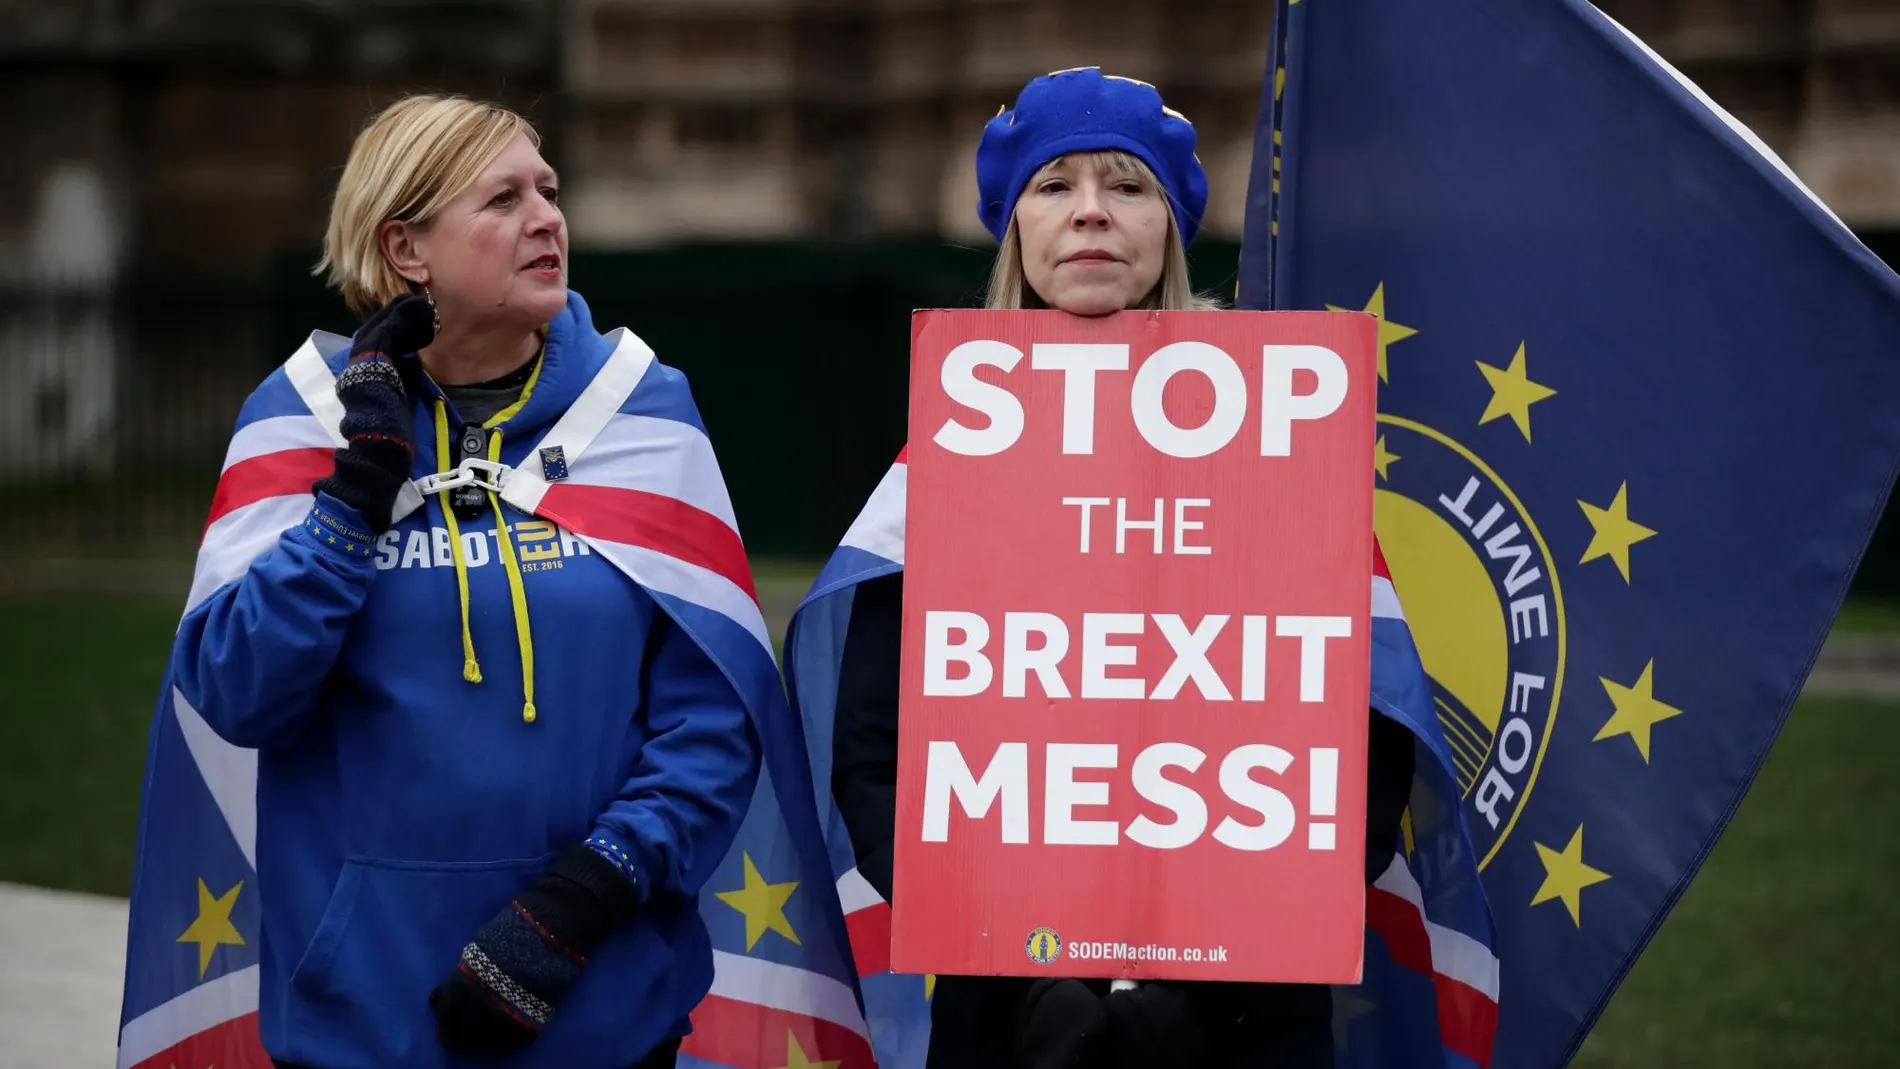 Manifestantes contrarios al divorcio de la UE muestran su rechazo a la postura de May: “Parad el desastre del Brexit”